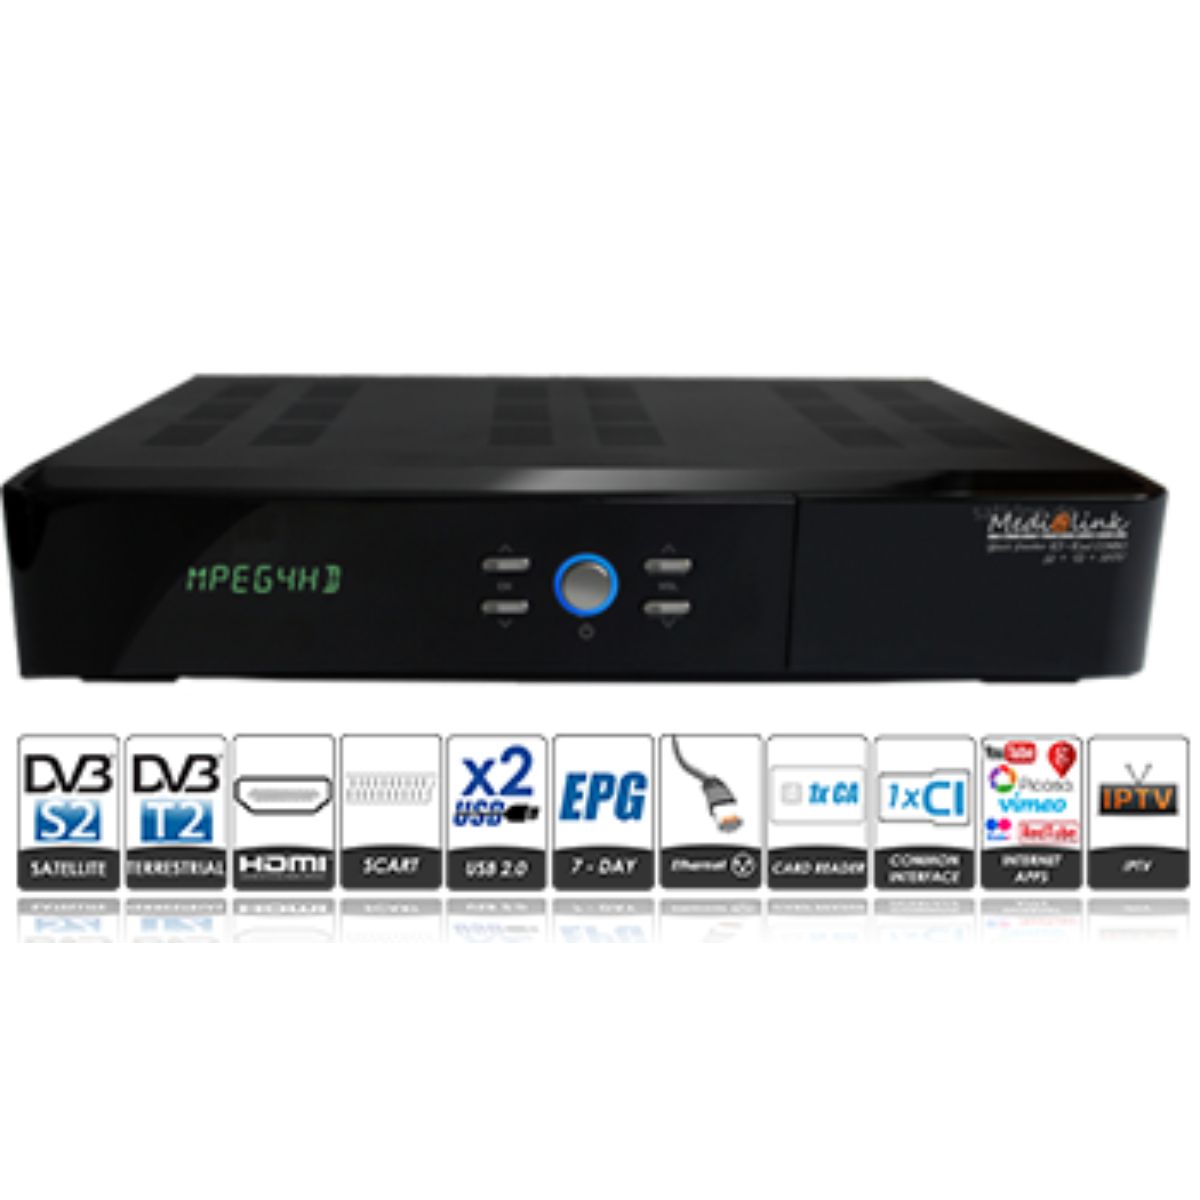 ► Medialink Black Panther 1xCX 1xCI Plus HD LAN USB DVB-C Kabelreceiver 